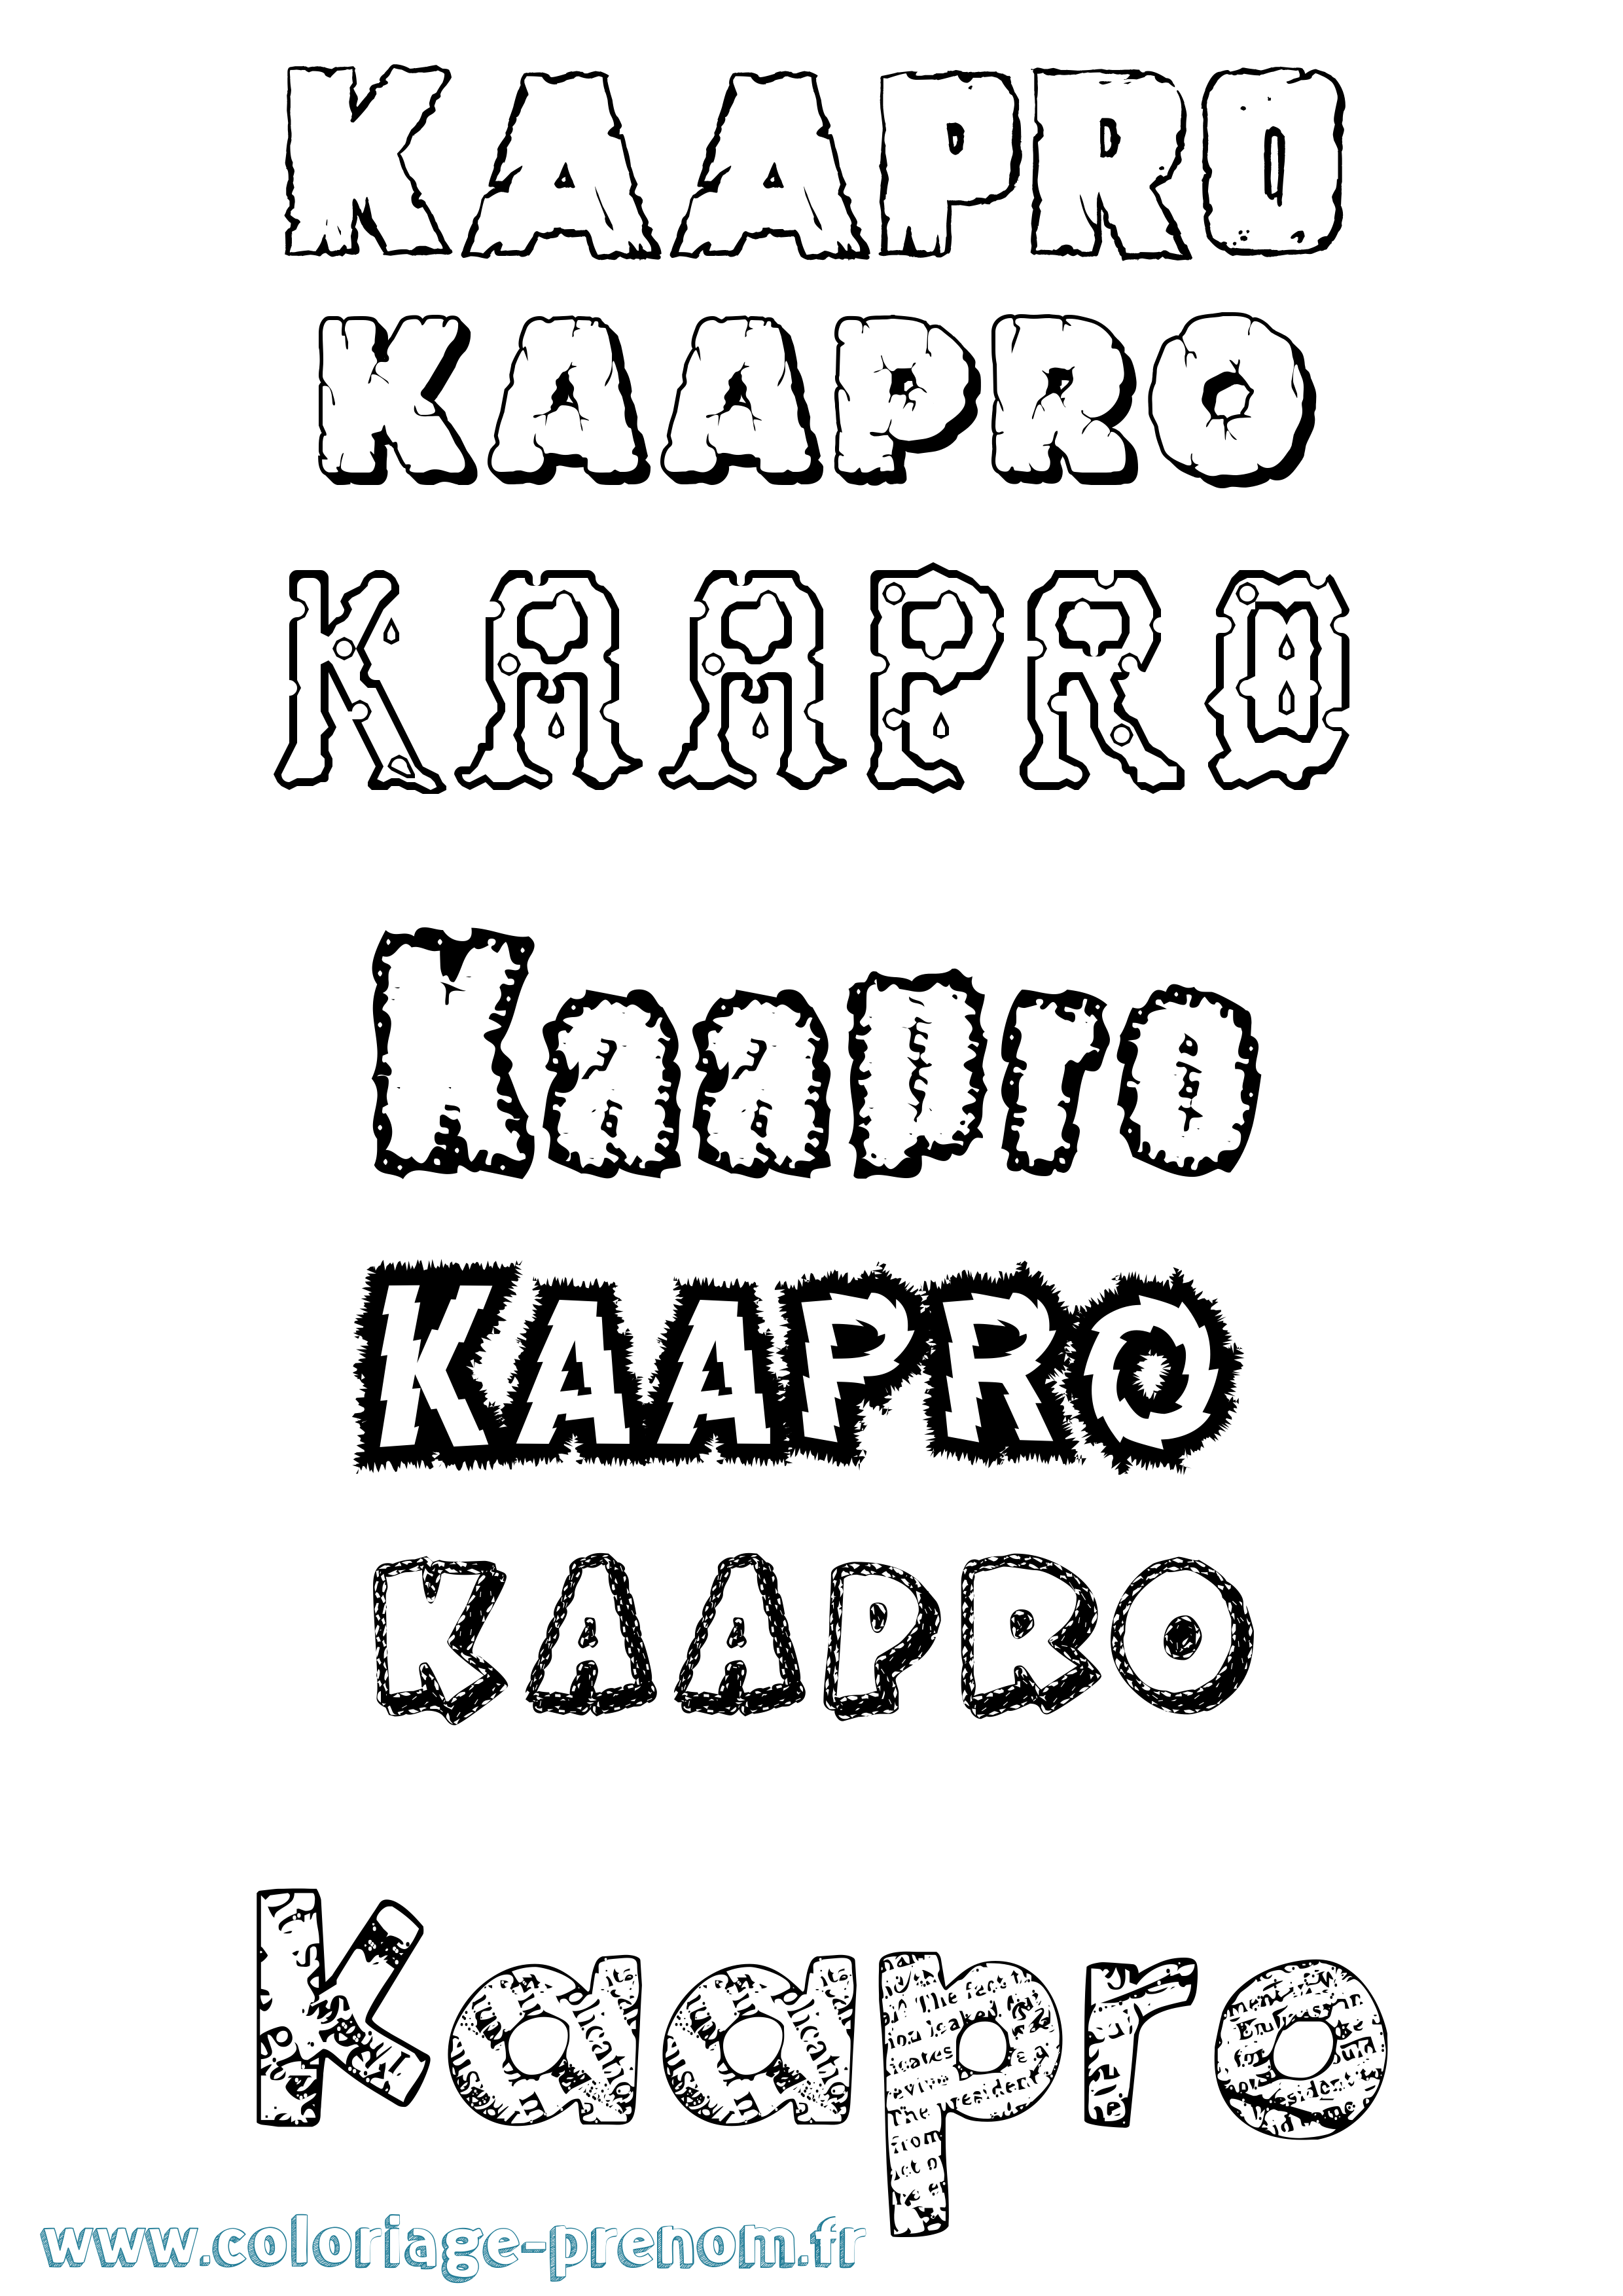 Coloriage prénom Kaapro Destructuré